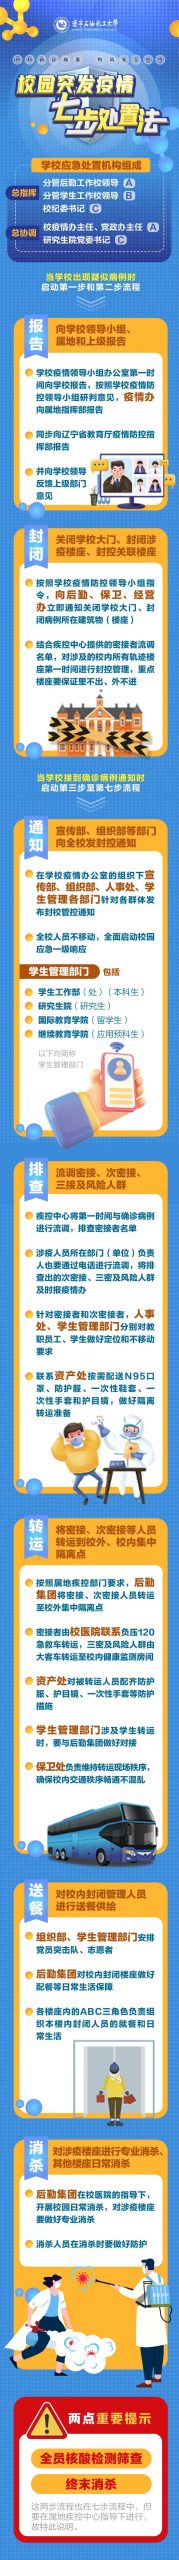 辽宁石油化工大学发布“校园突发疫情七步处置法”